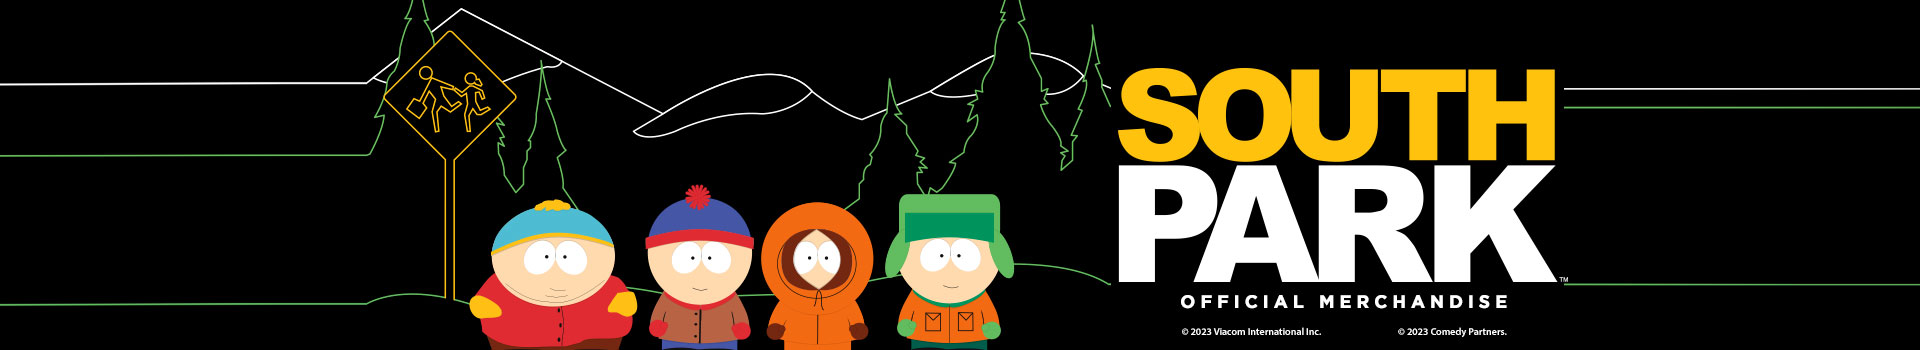 South Park Official Merchandise